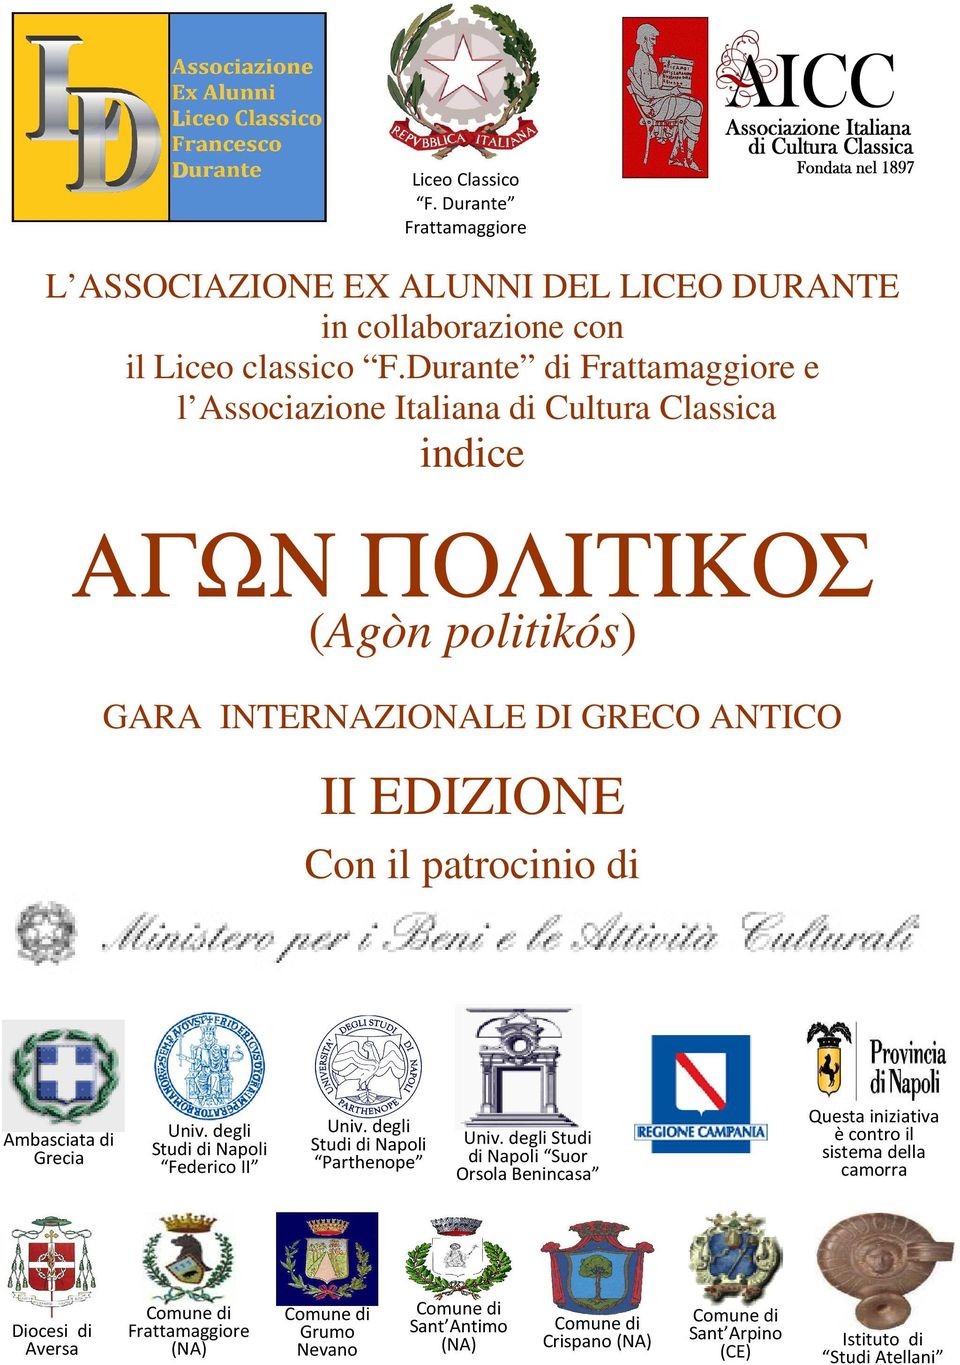 Con il patrocinio di Ambasciata di Grecia Univ. degli Studi di Napoli Federico II Univ. degli Studi di Napoli Parthenope Univ.